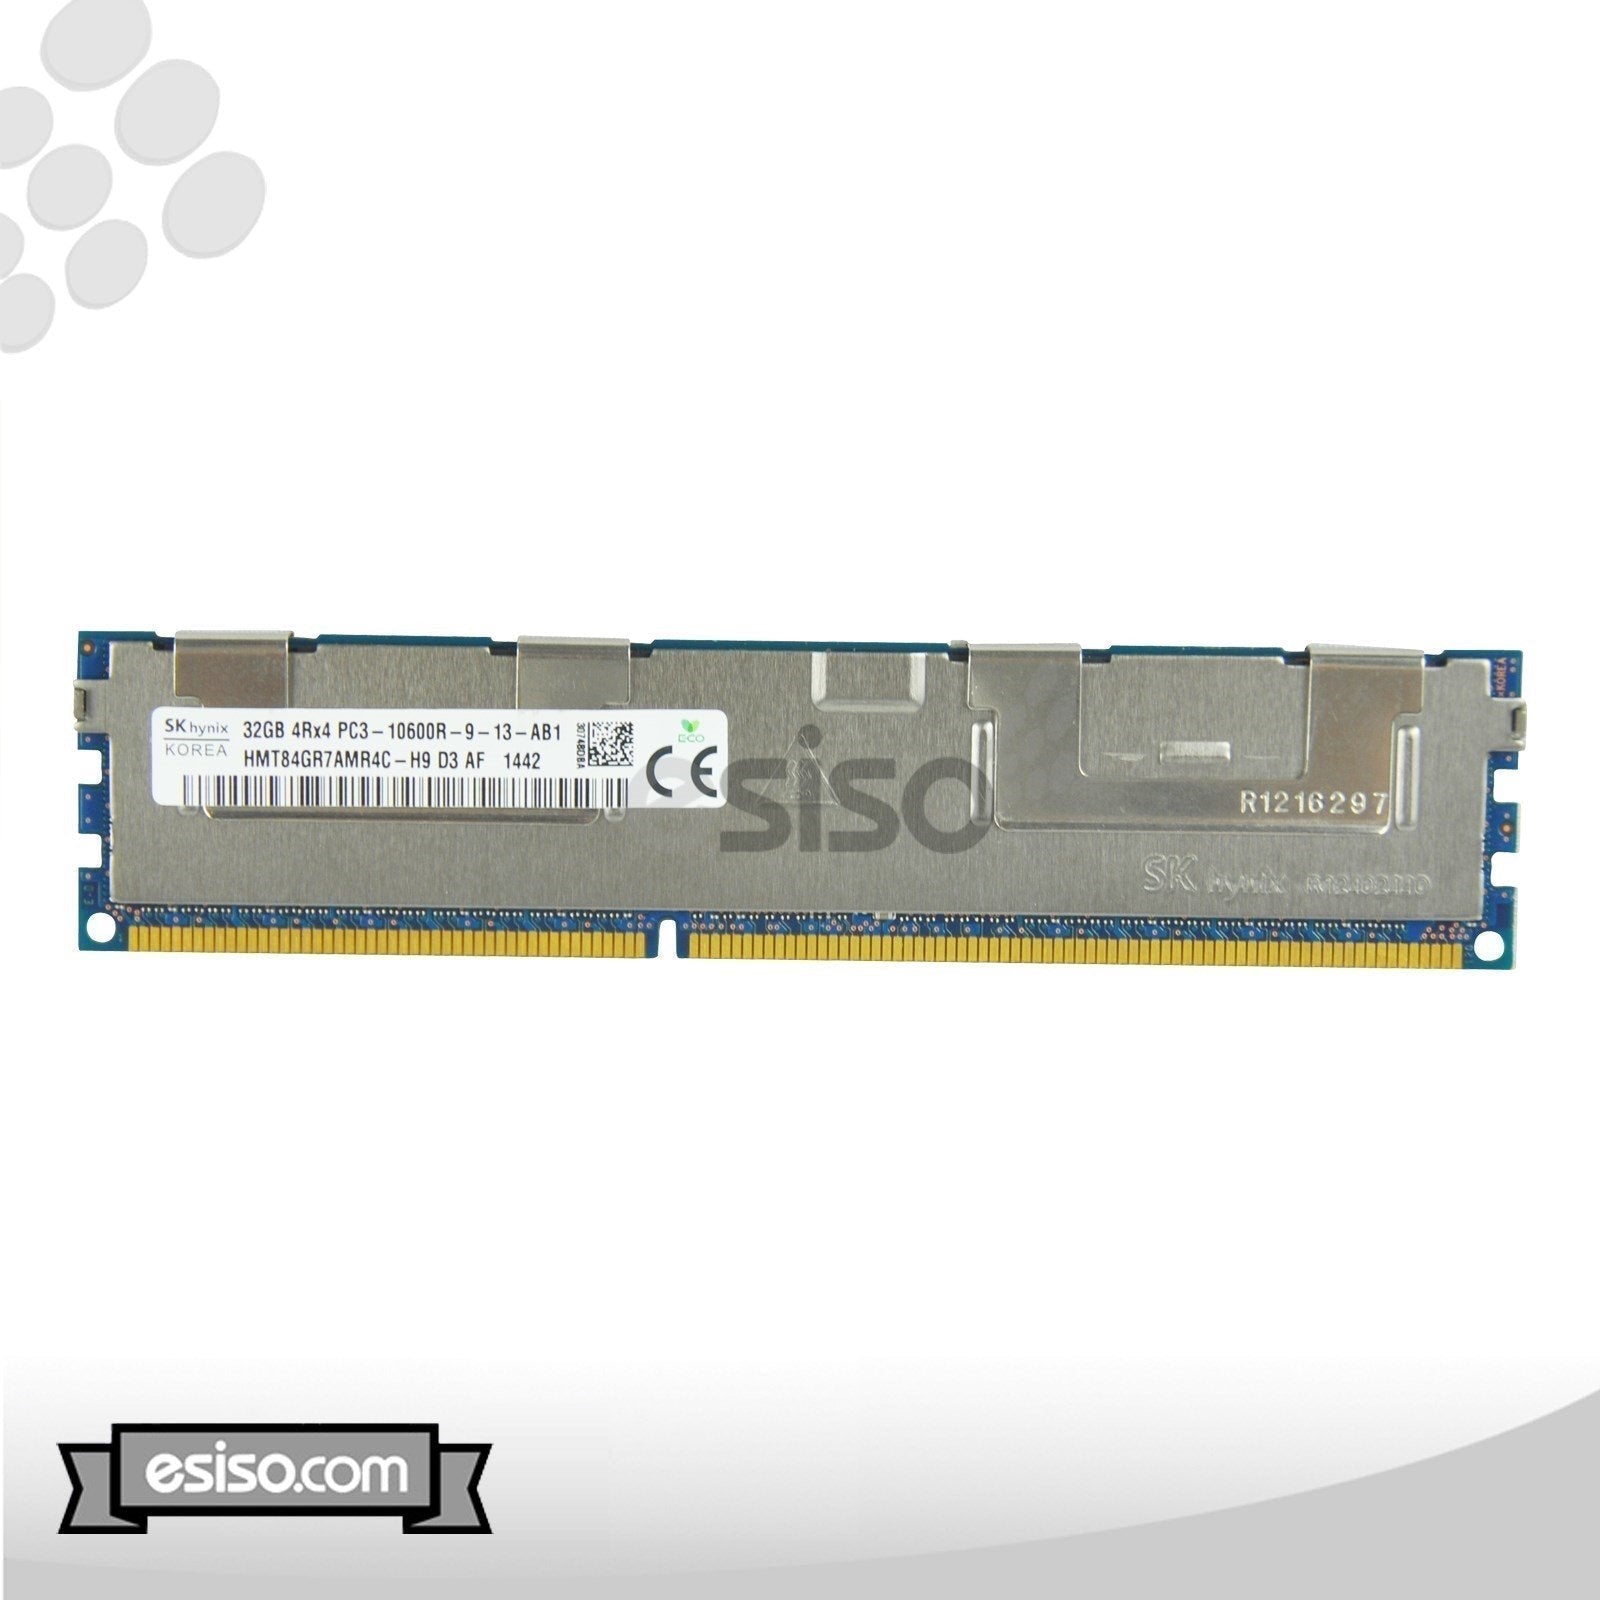 HMT84GR7AMR4C-H9 HYNIX 32GB 4RX4 PC3-10600R DDR3 MEMORY MODULE (1X32GB)